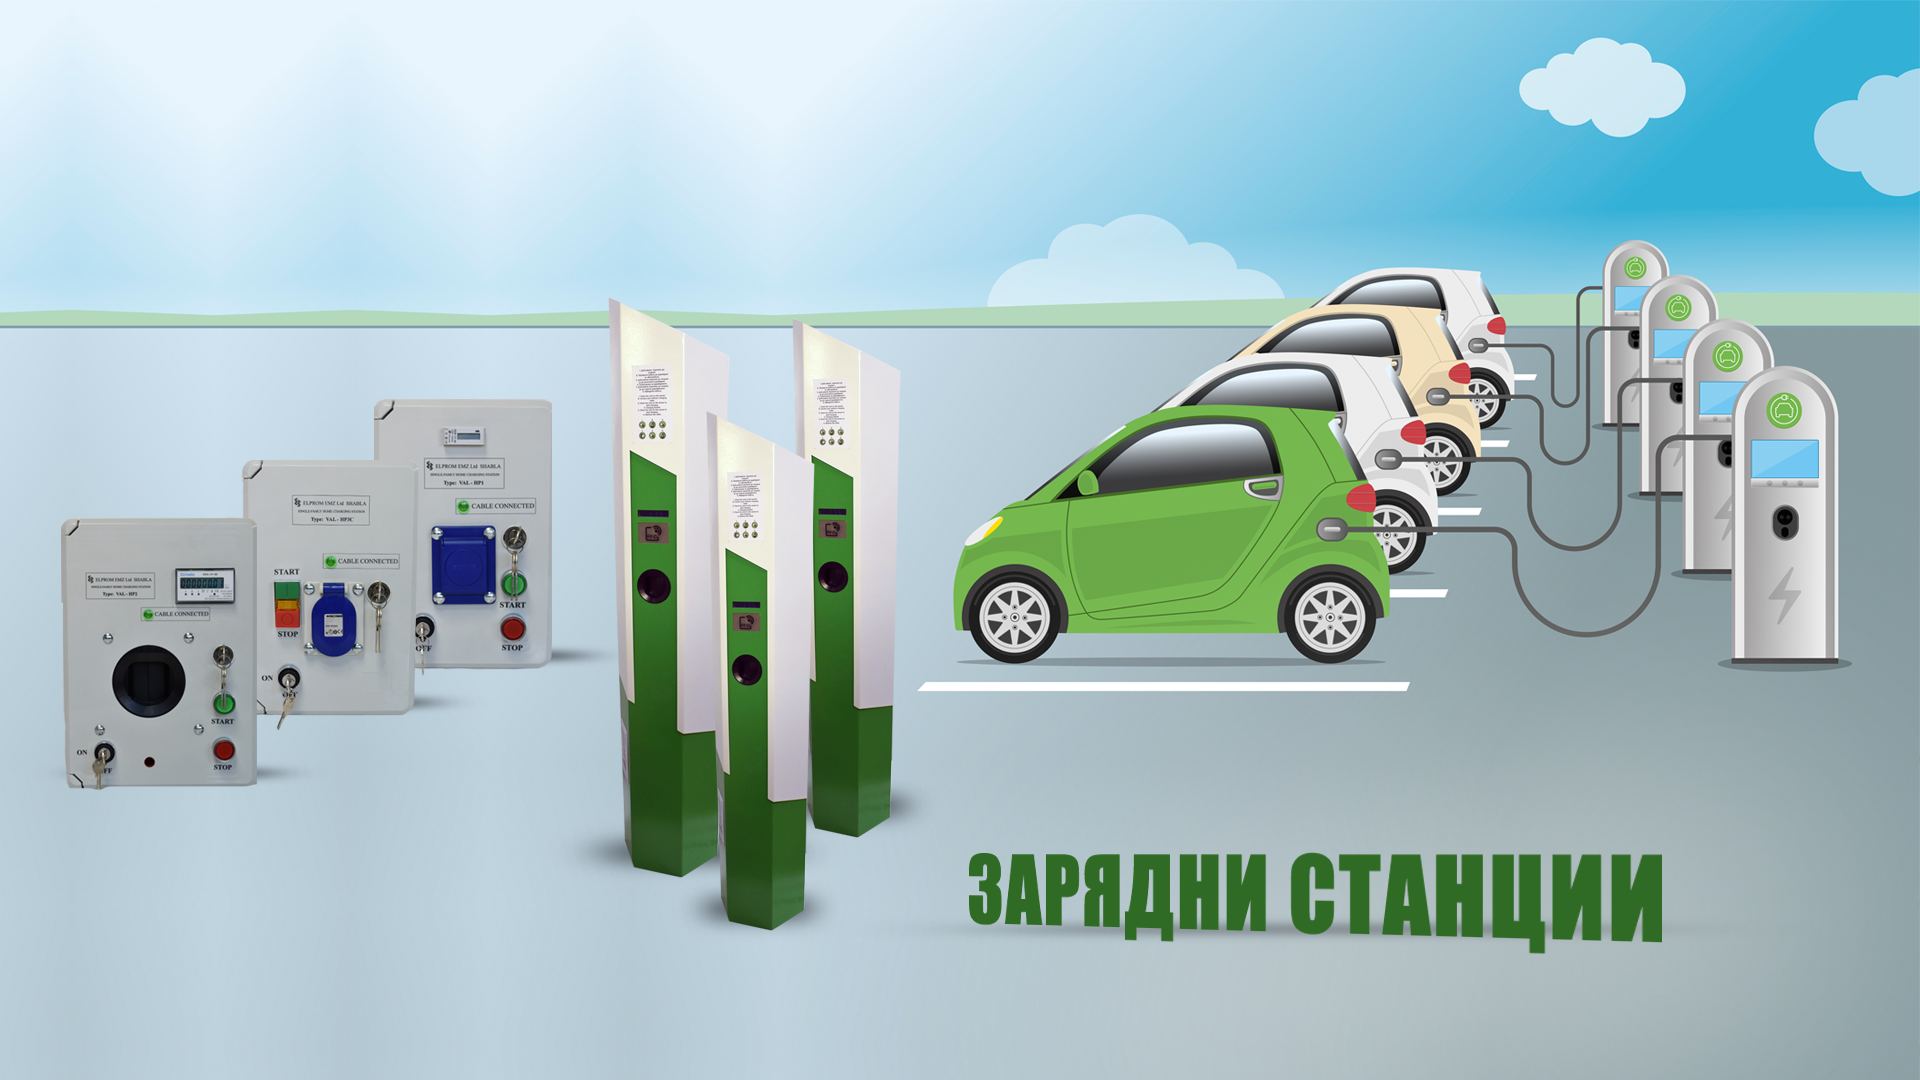 Димитър Арнаудов: Има високо търсене на зарядни станции за електромобили